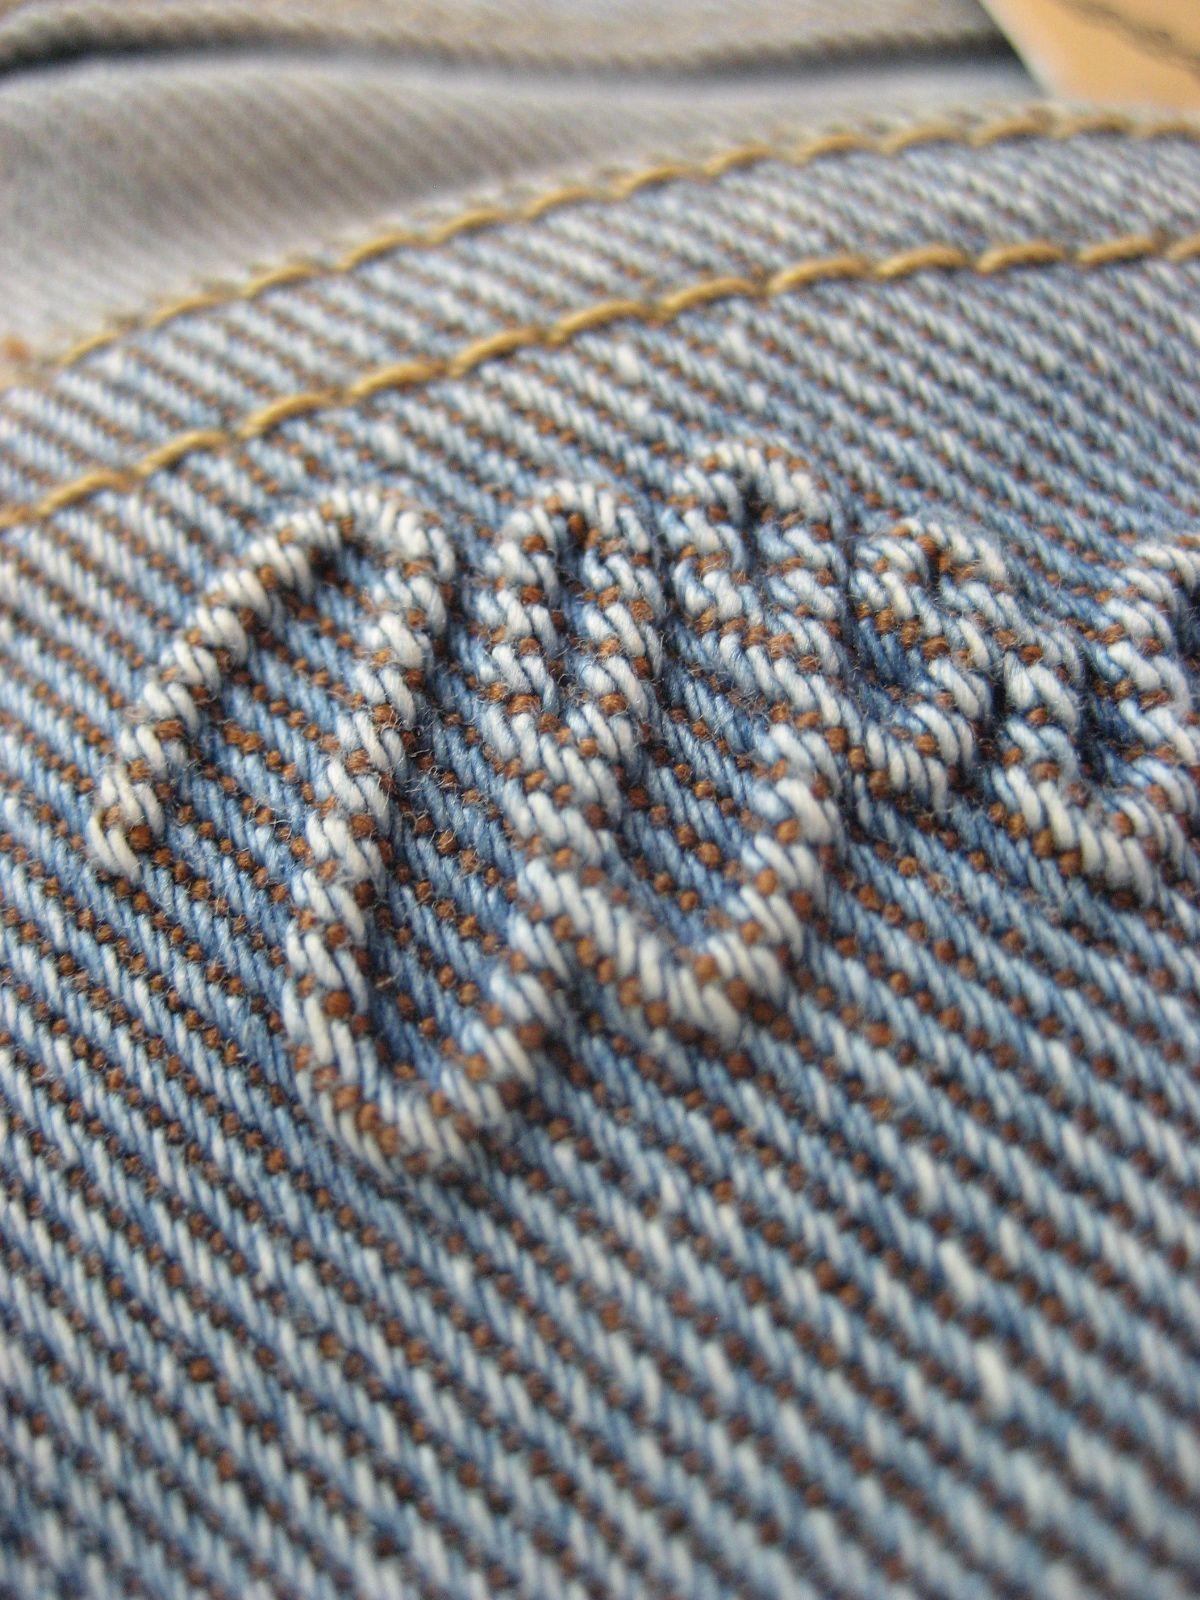 Wrangler Jeans Wallpaper